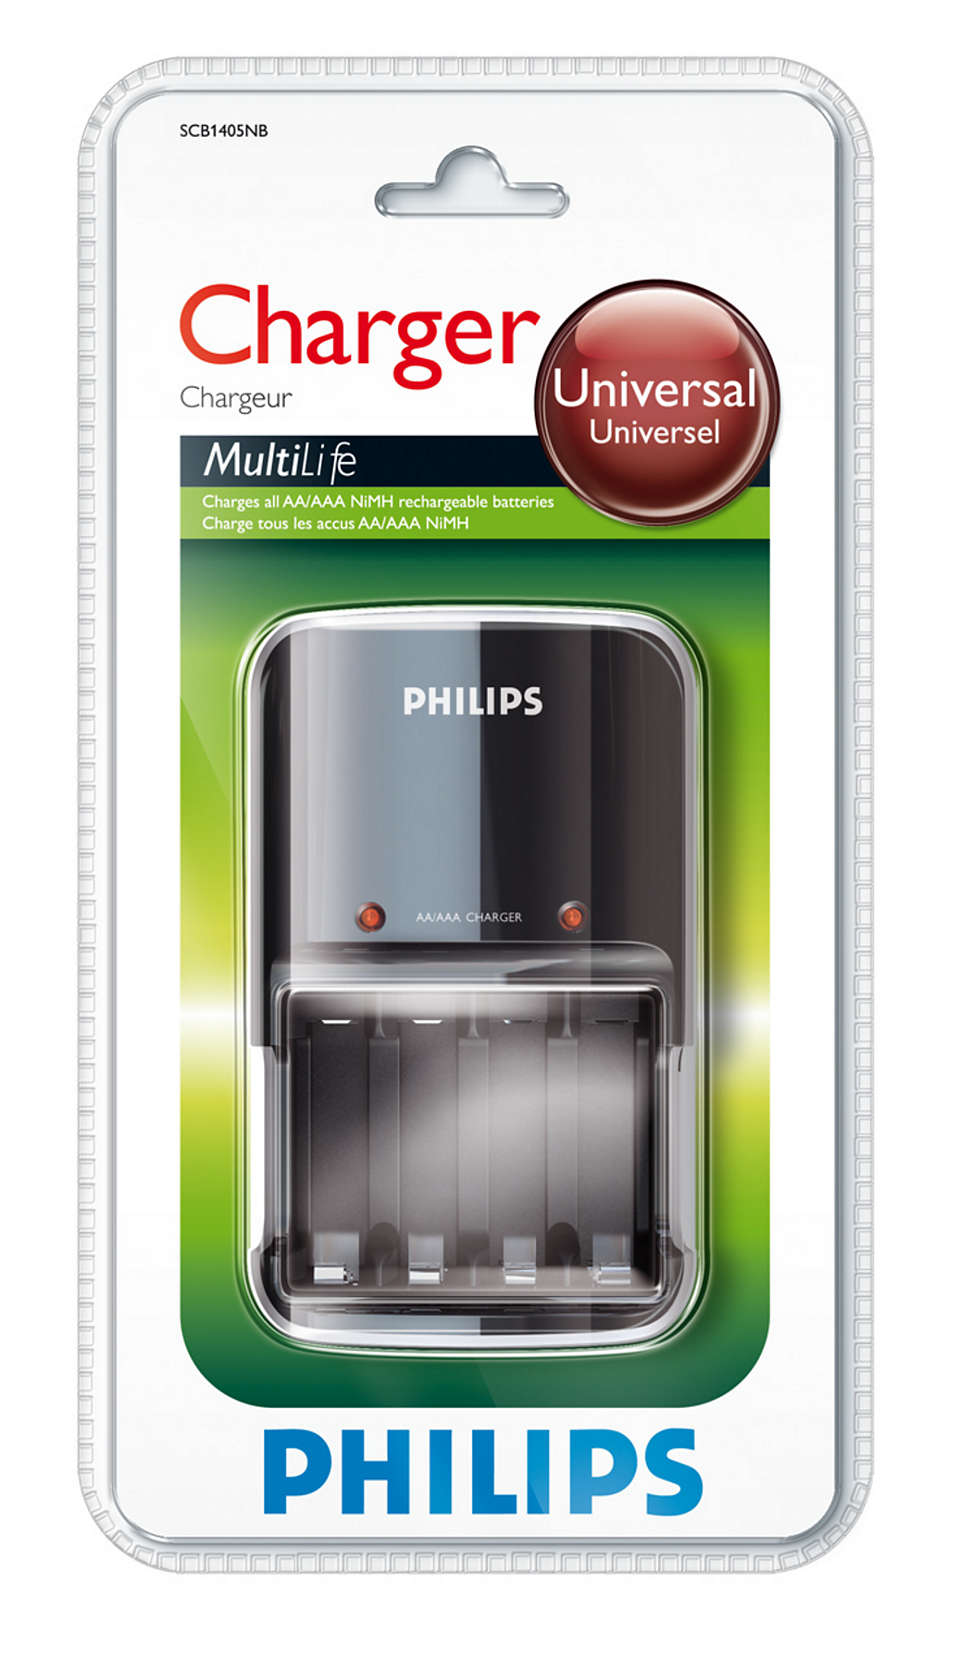 Зарядное устройство Philips. Аккумуляторы Philips MULTILIFE. Philips Battery Charger. Philips зарядное устройство для батареек. Как зарядить филипс